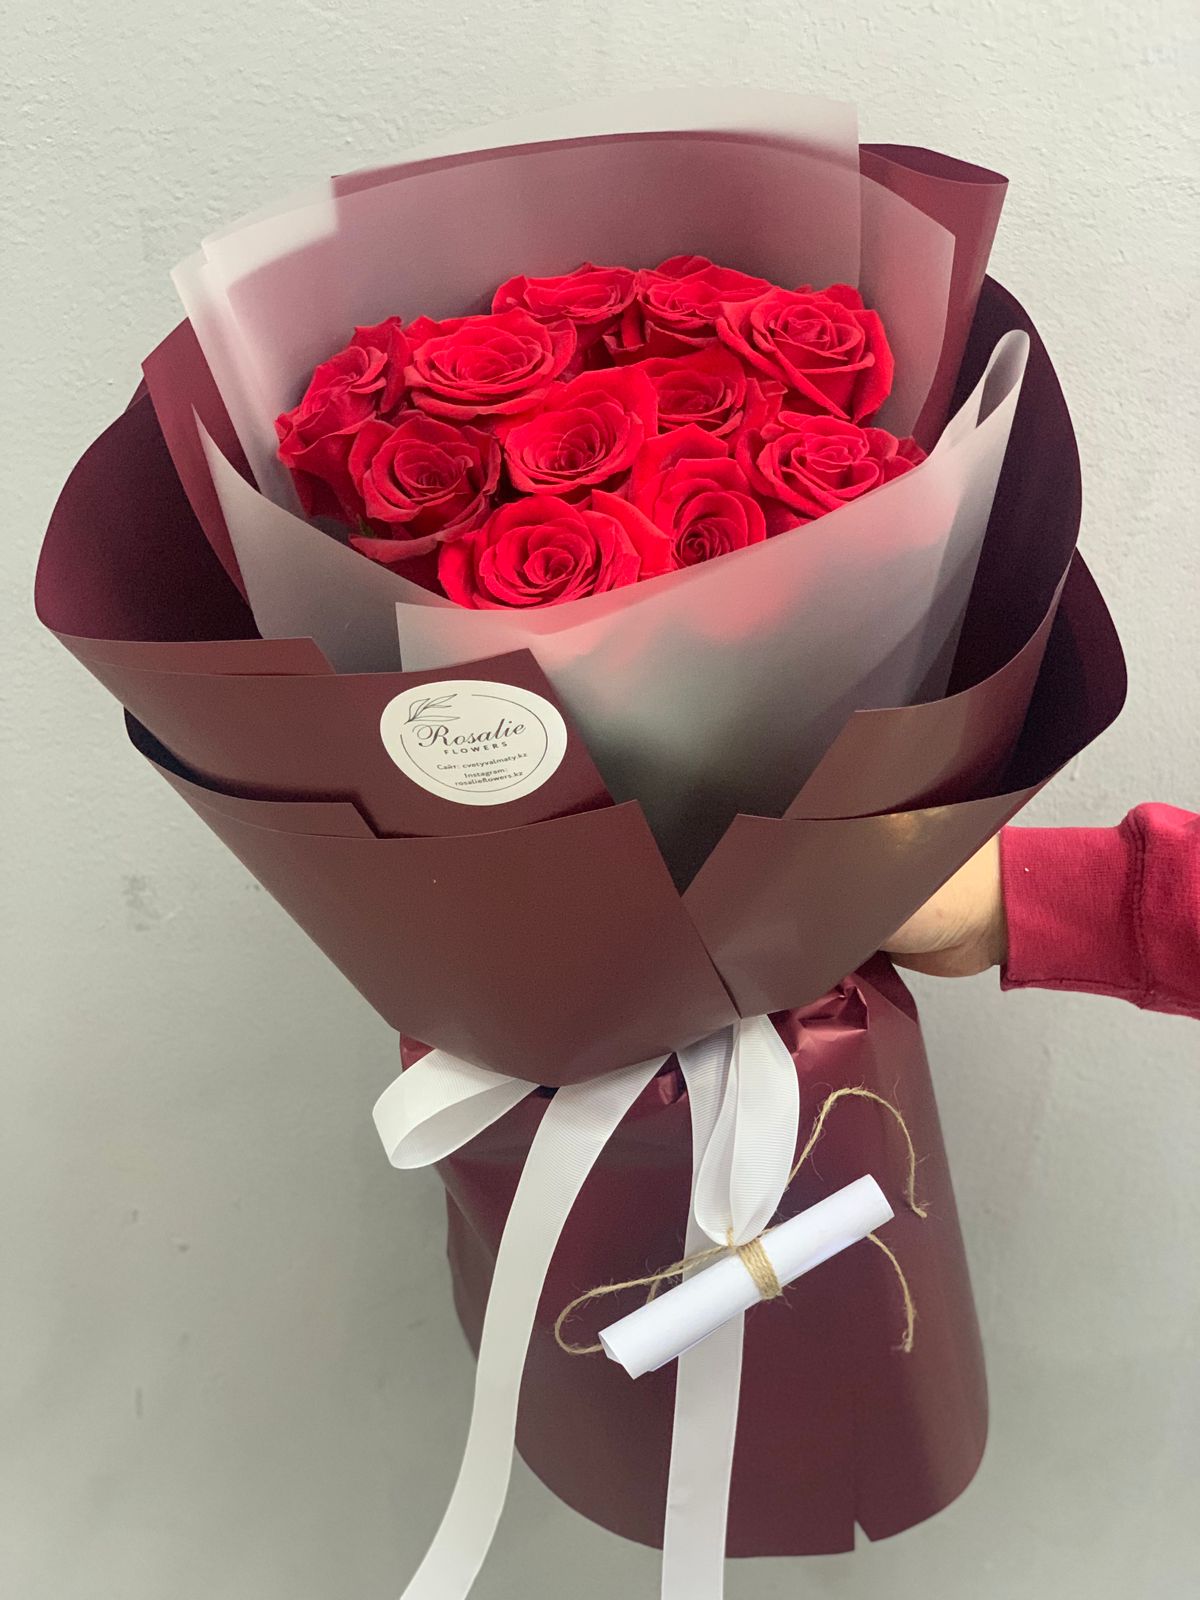 Букет 11 красных роз в оформлении с доставкой по Алматы